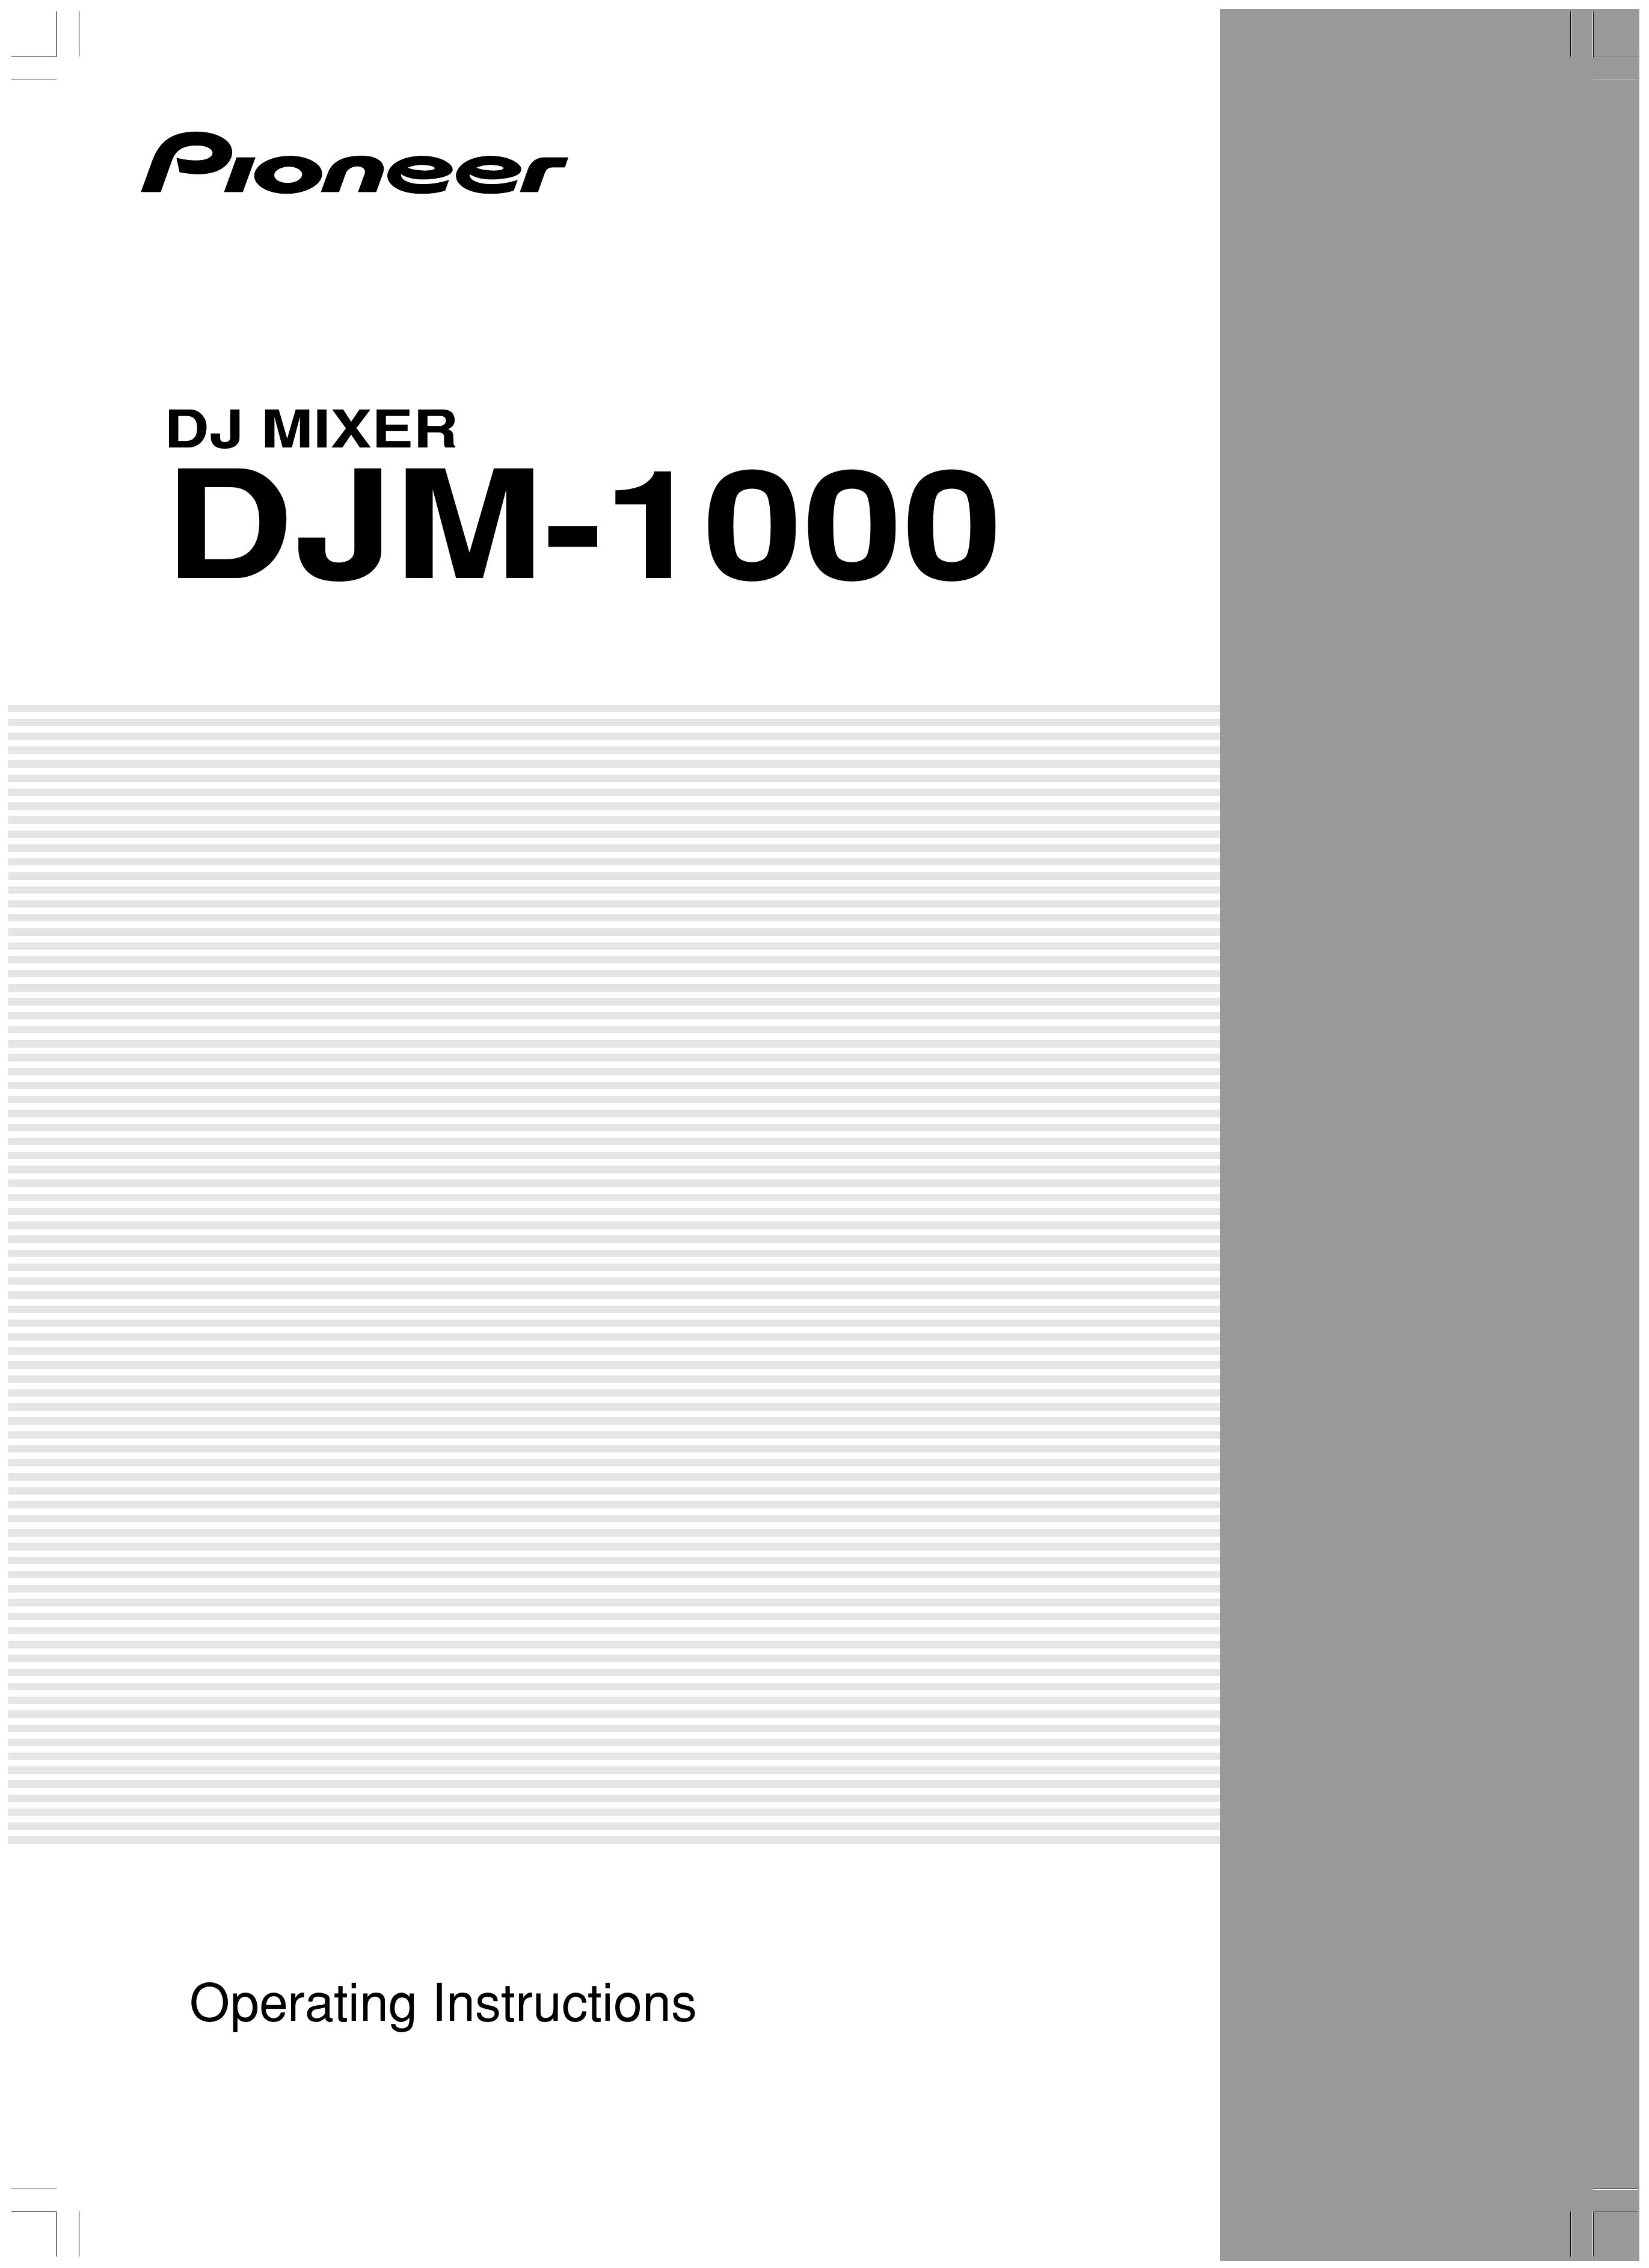 Pioneer DJM-1000 Music Mixer User Manual